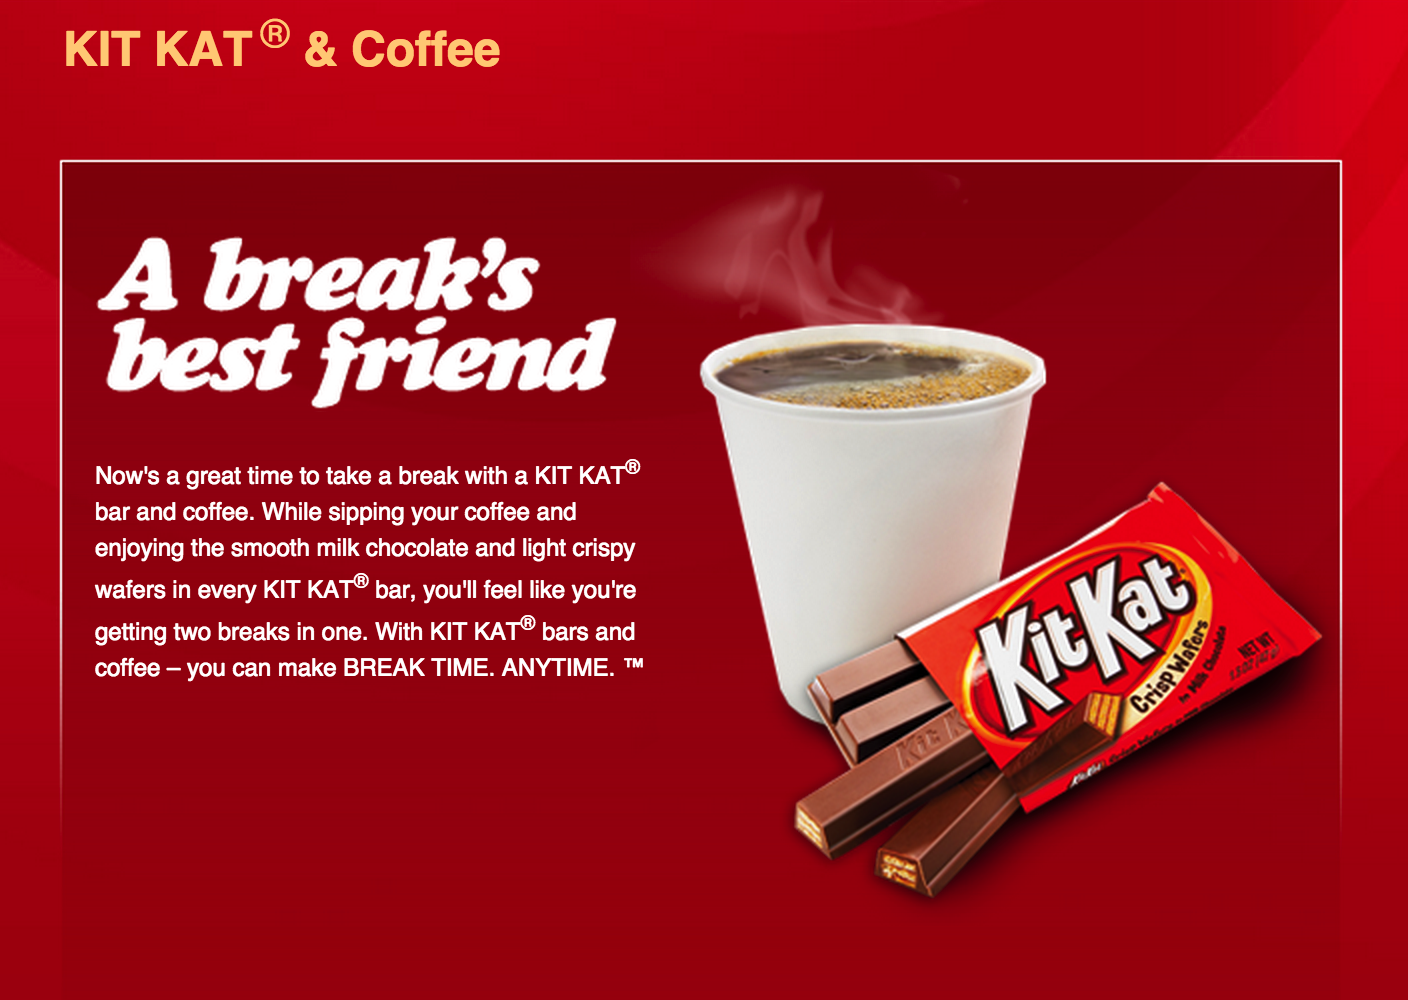 Kit Kat’s “a break’s best friend.” Campaign (2007).